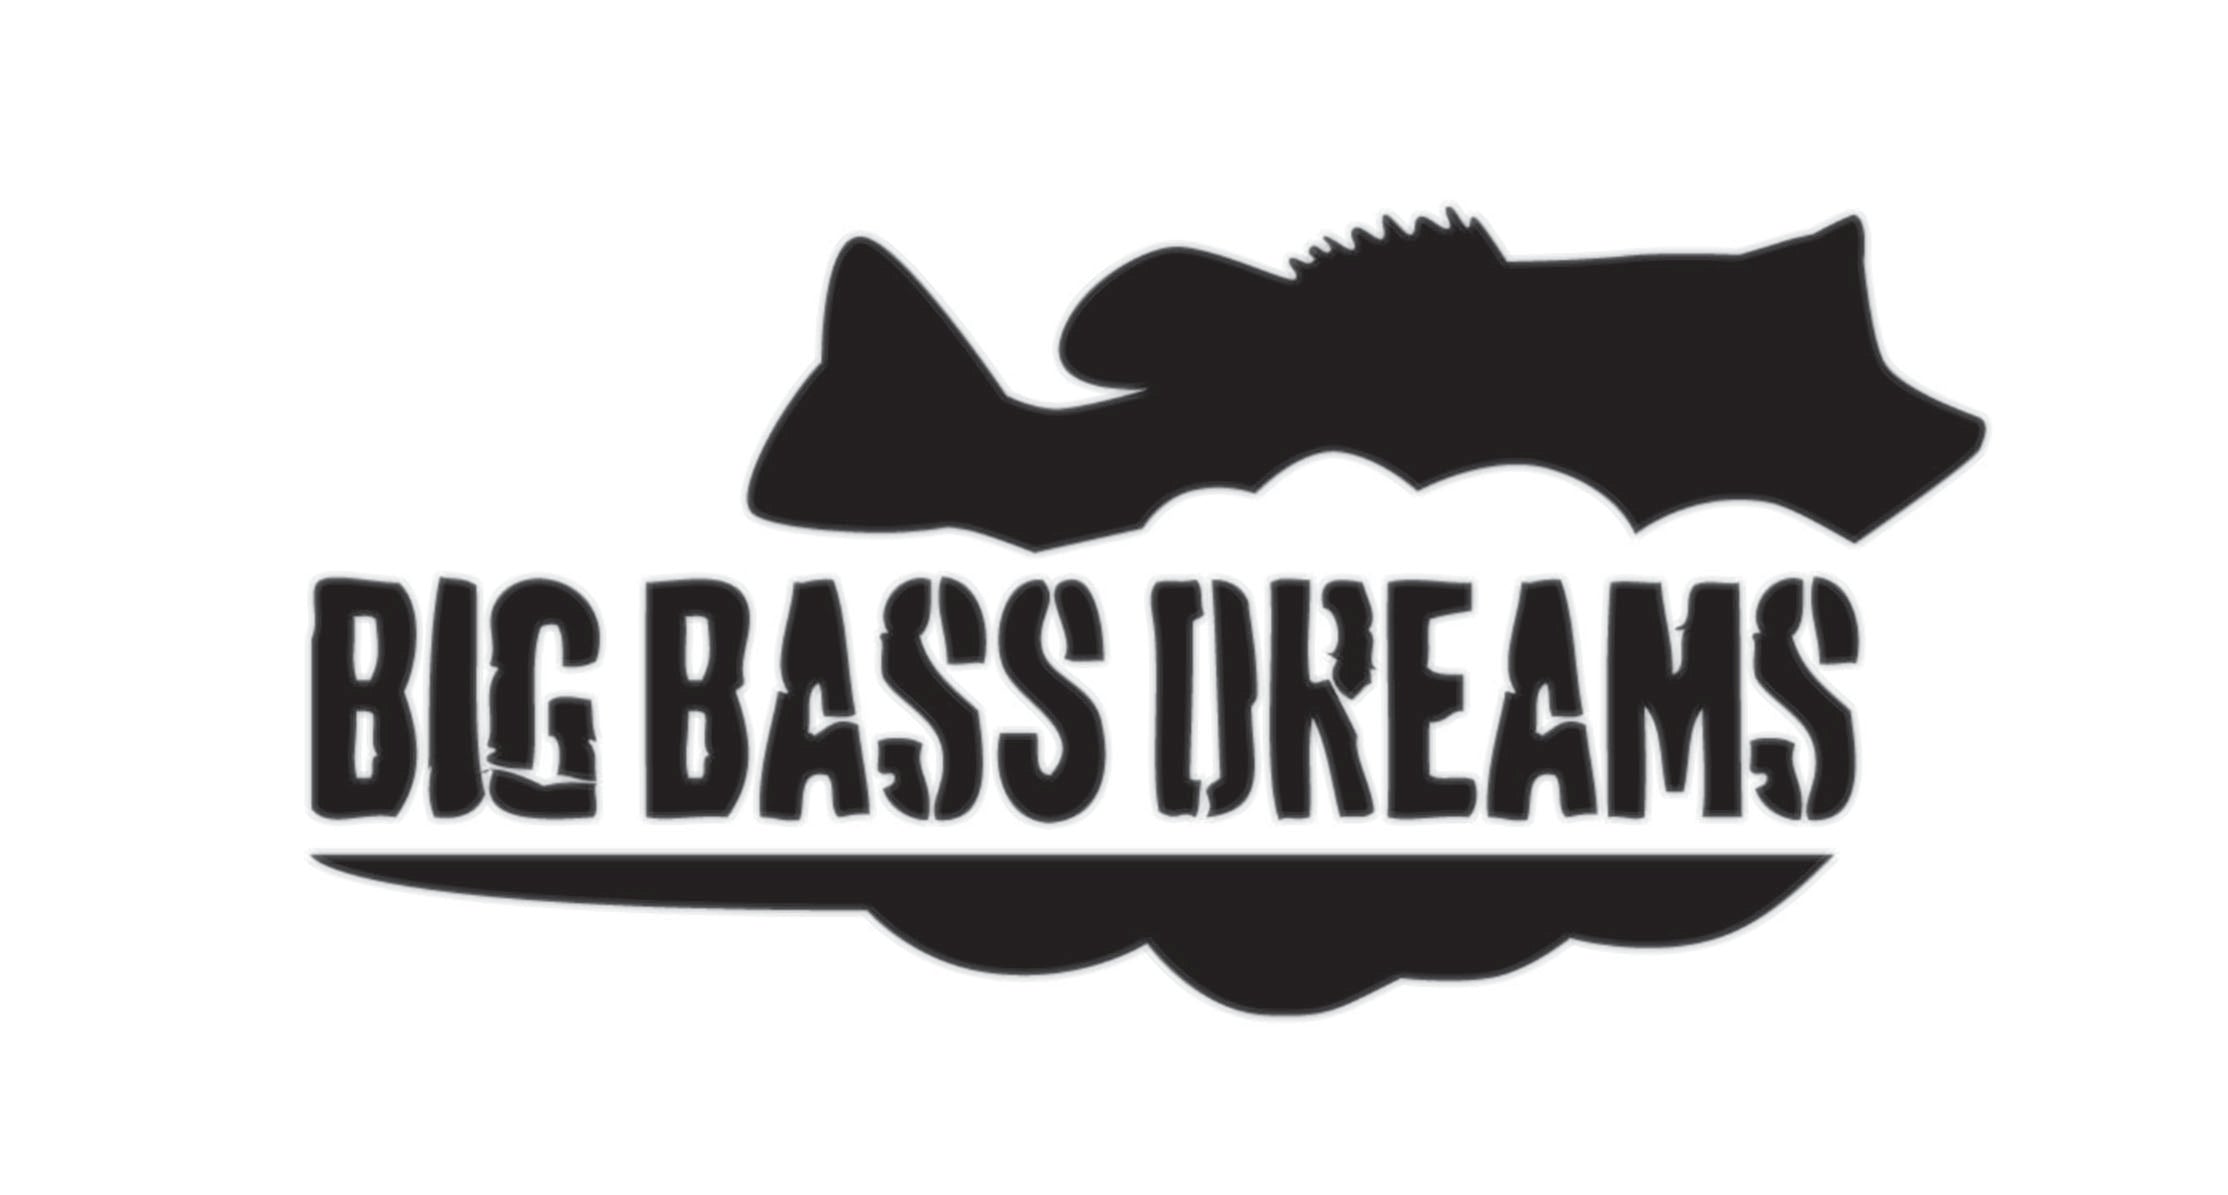 Big Bass Dreams 5 Decal